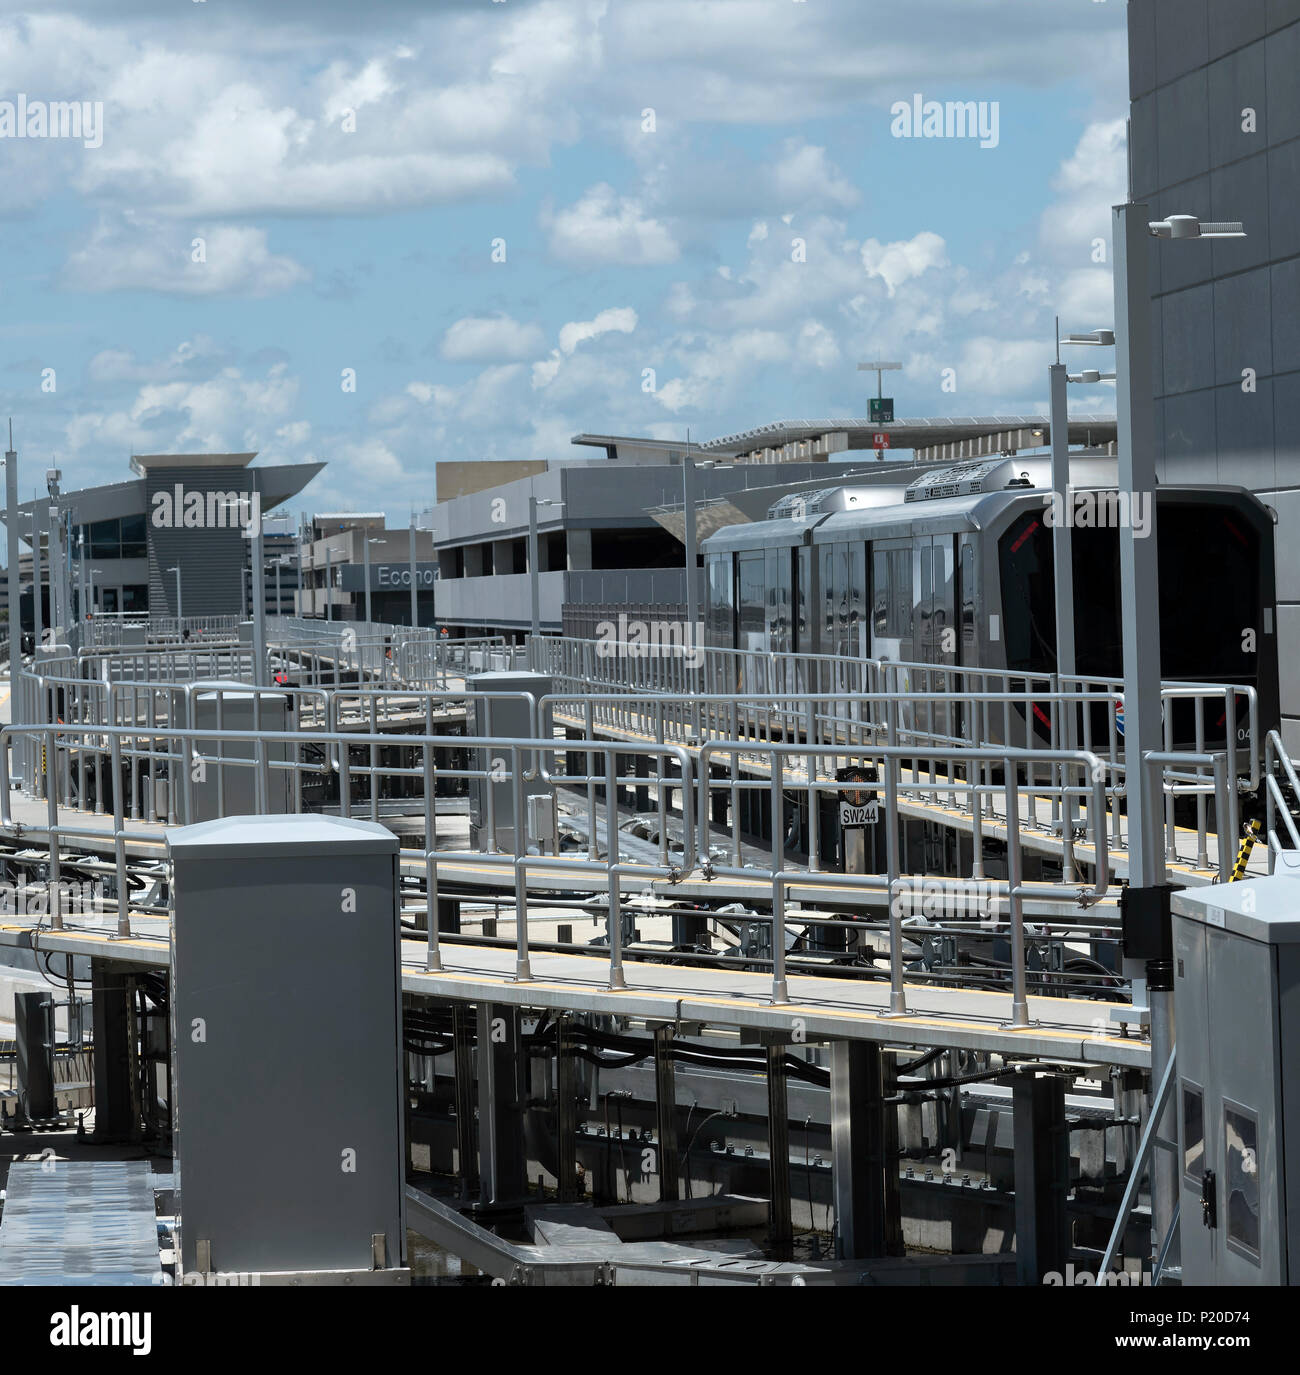 Zum Internationalen Flughafen Tampa, Florida, USA. 2018. Die skyconnect Zug zwischen Terminal, Parkplatz und Mietwagen. Stockfoto